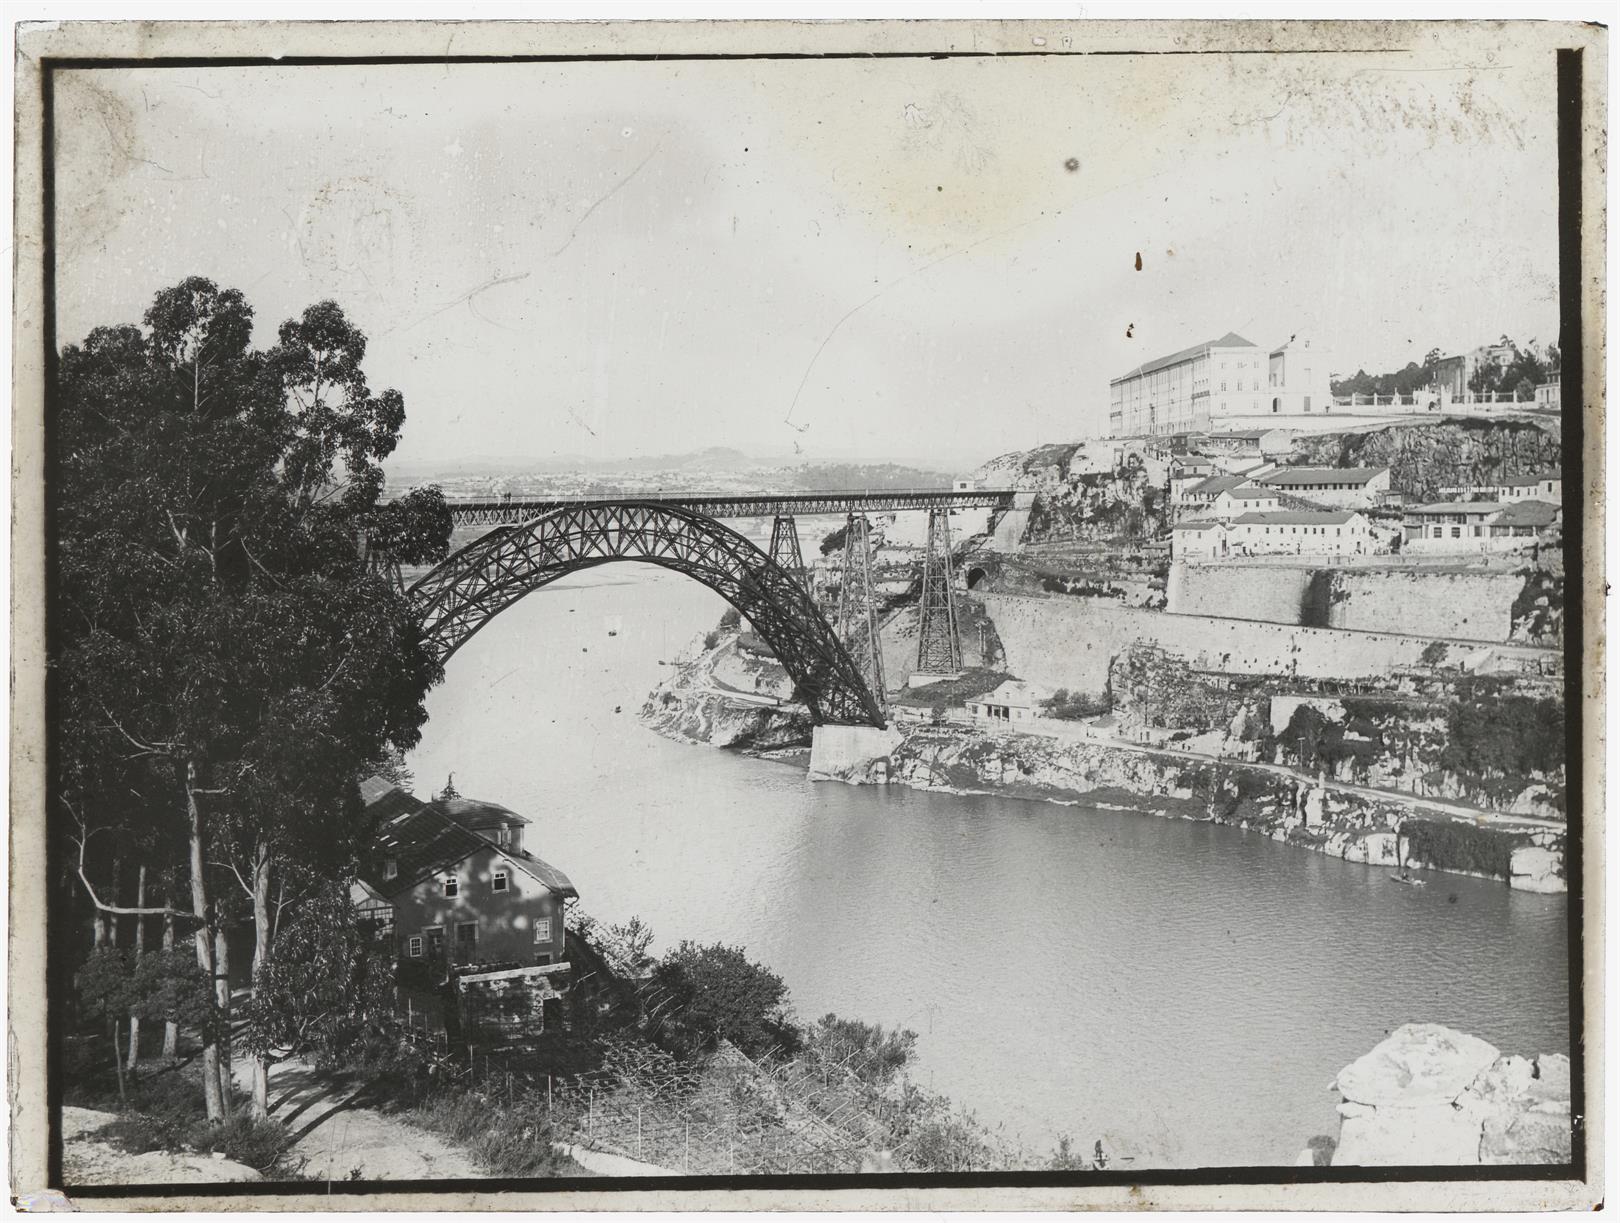 Vista da ponte Maria Pia e do Seminário Maior do Porto